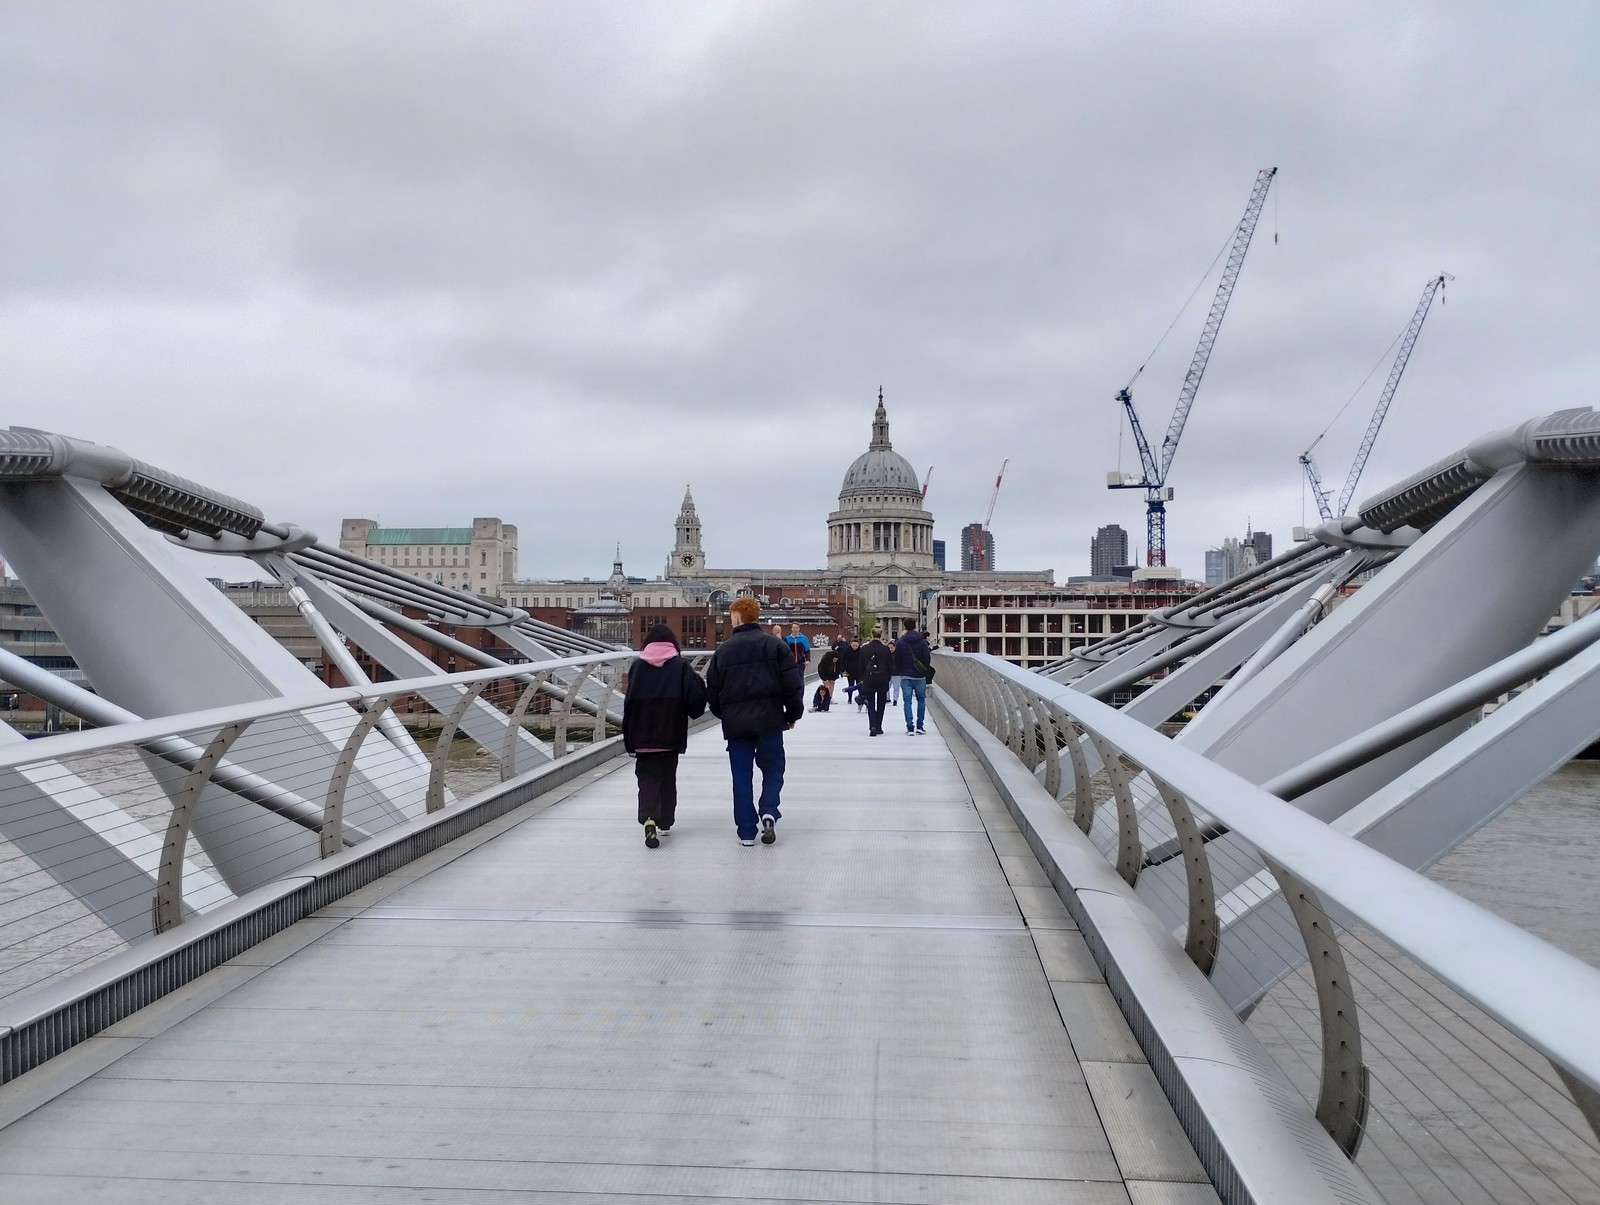 London Day 3 Bridge by: